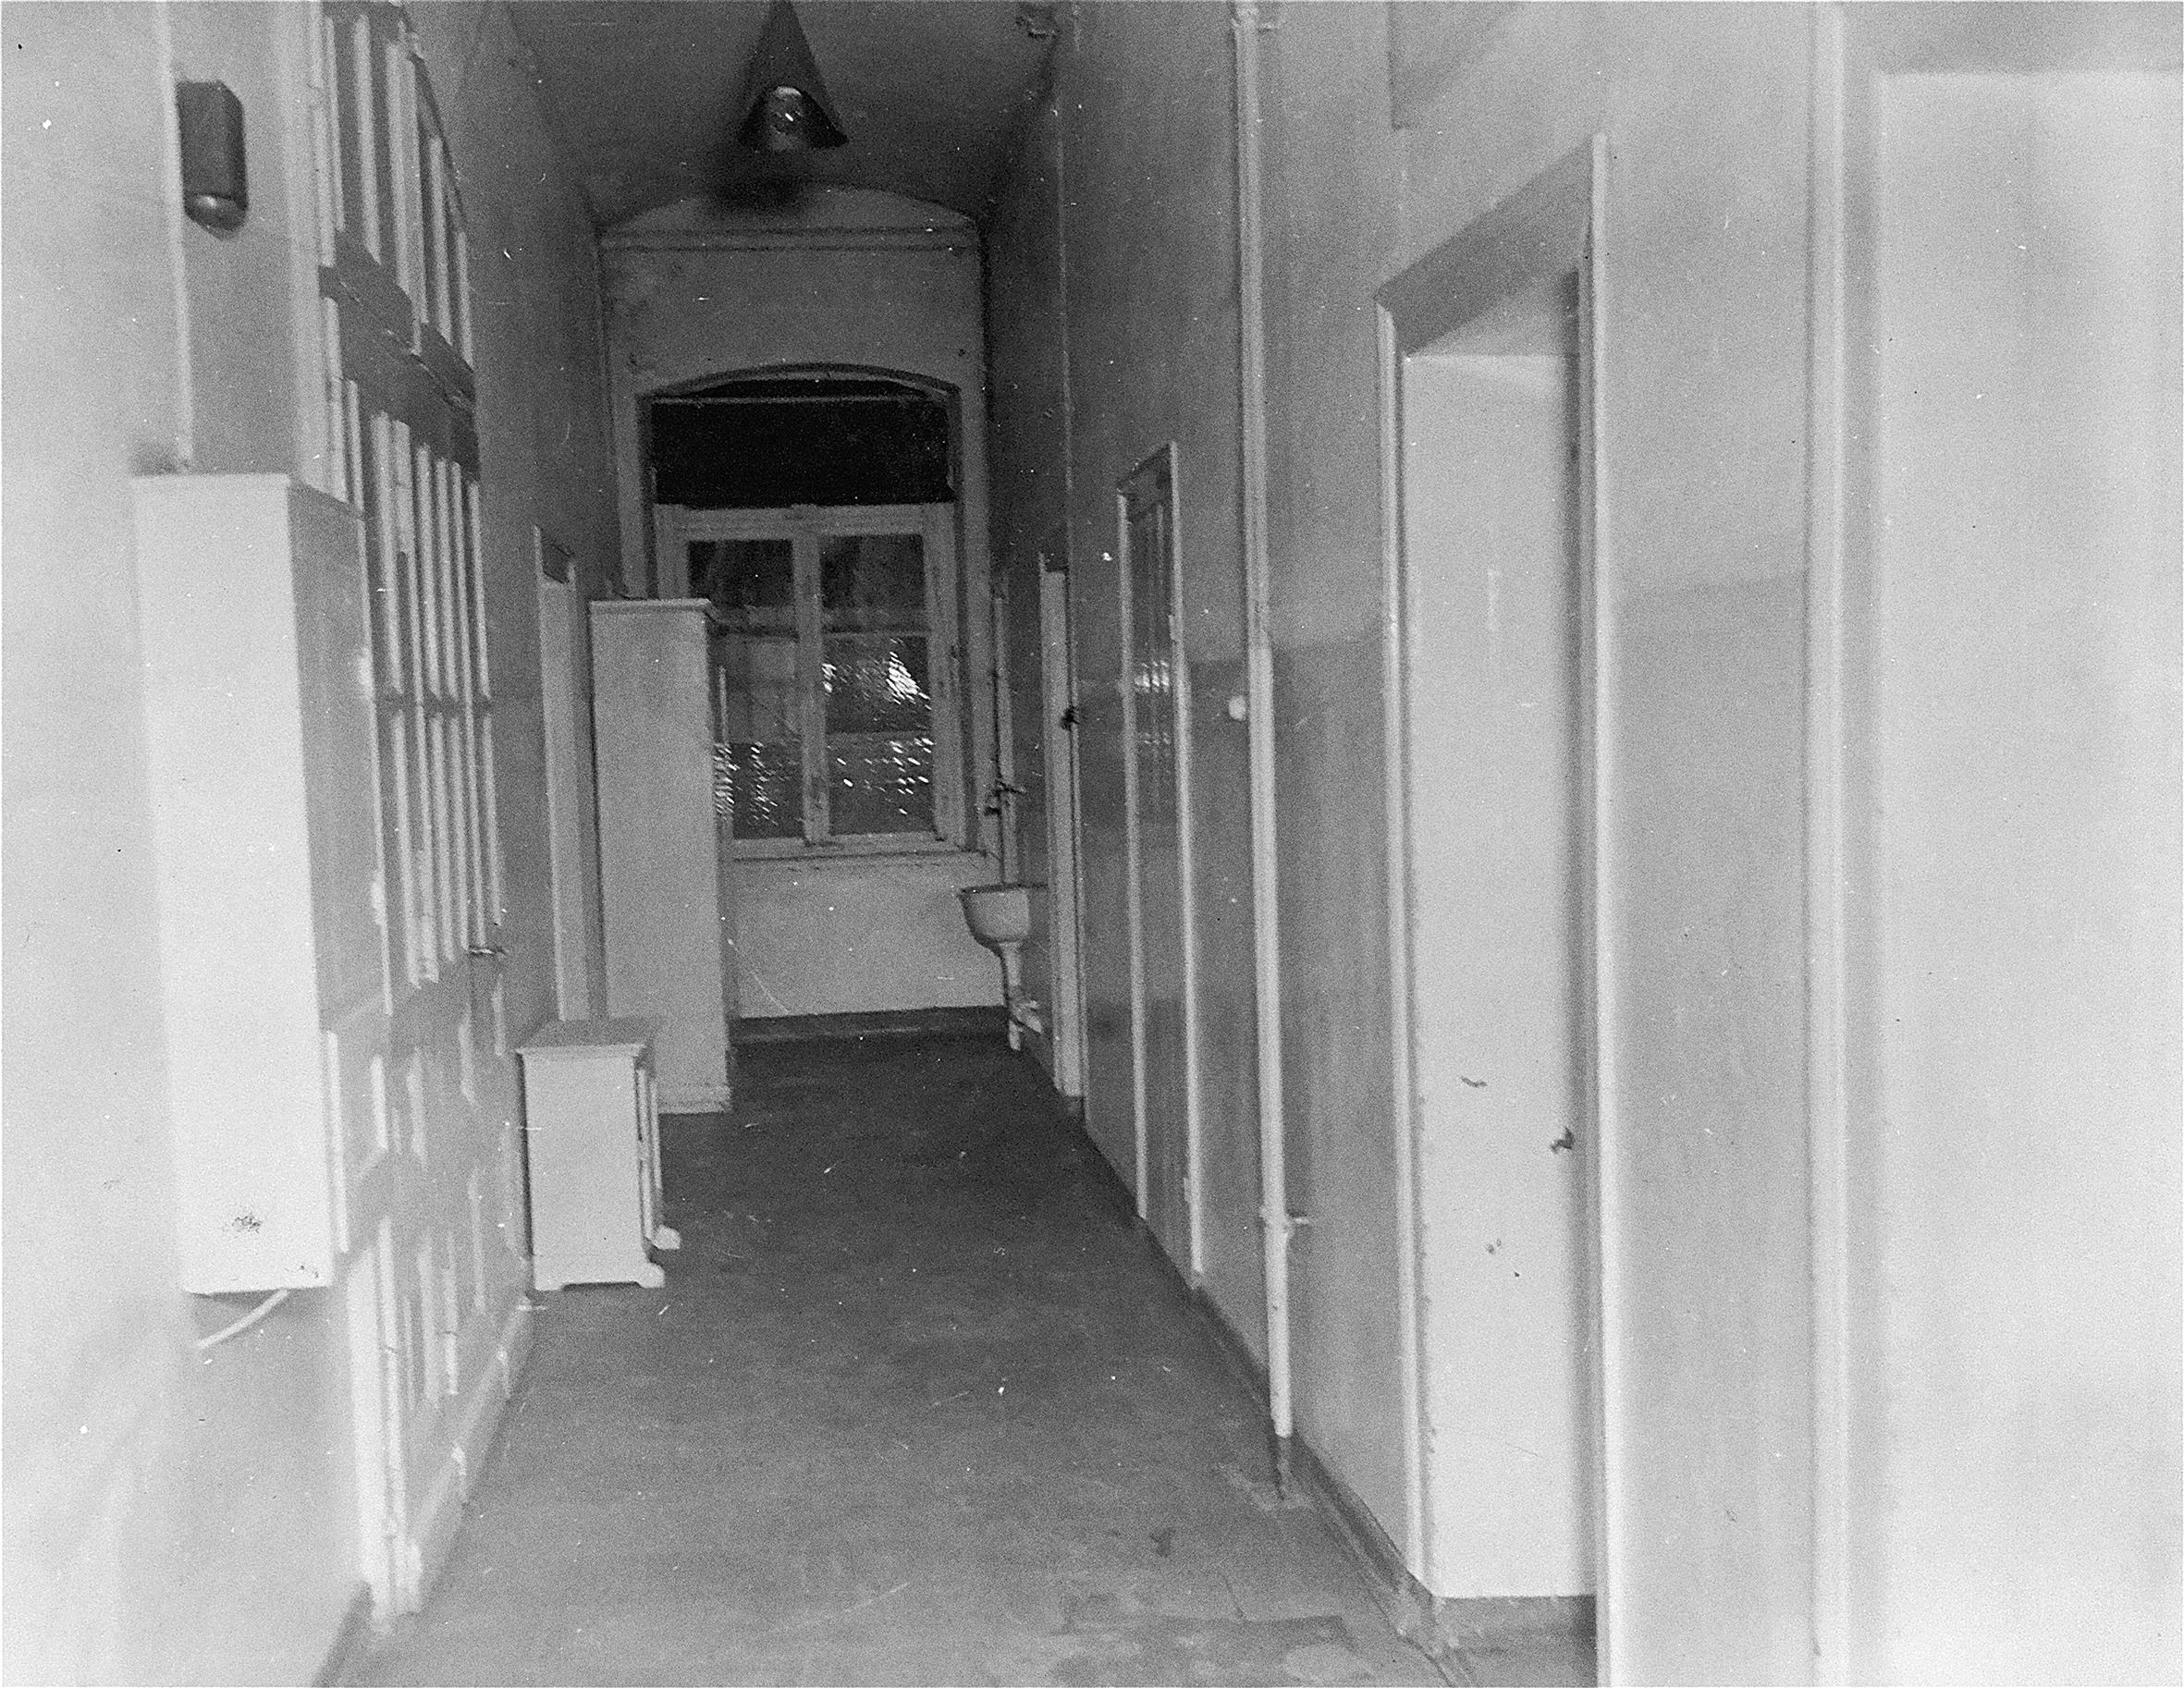 Bilden visar en tom och ödslig korridor med flera dörrar.